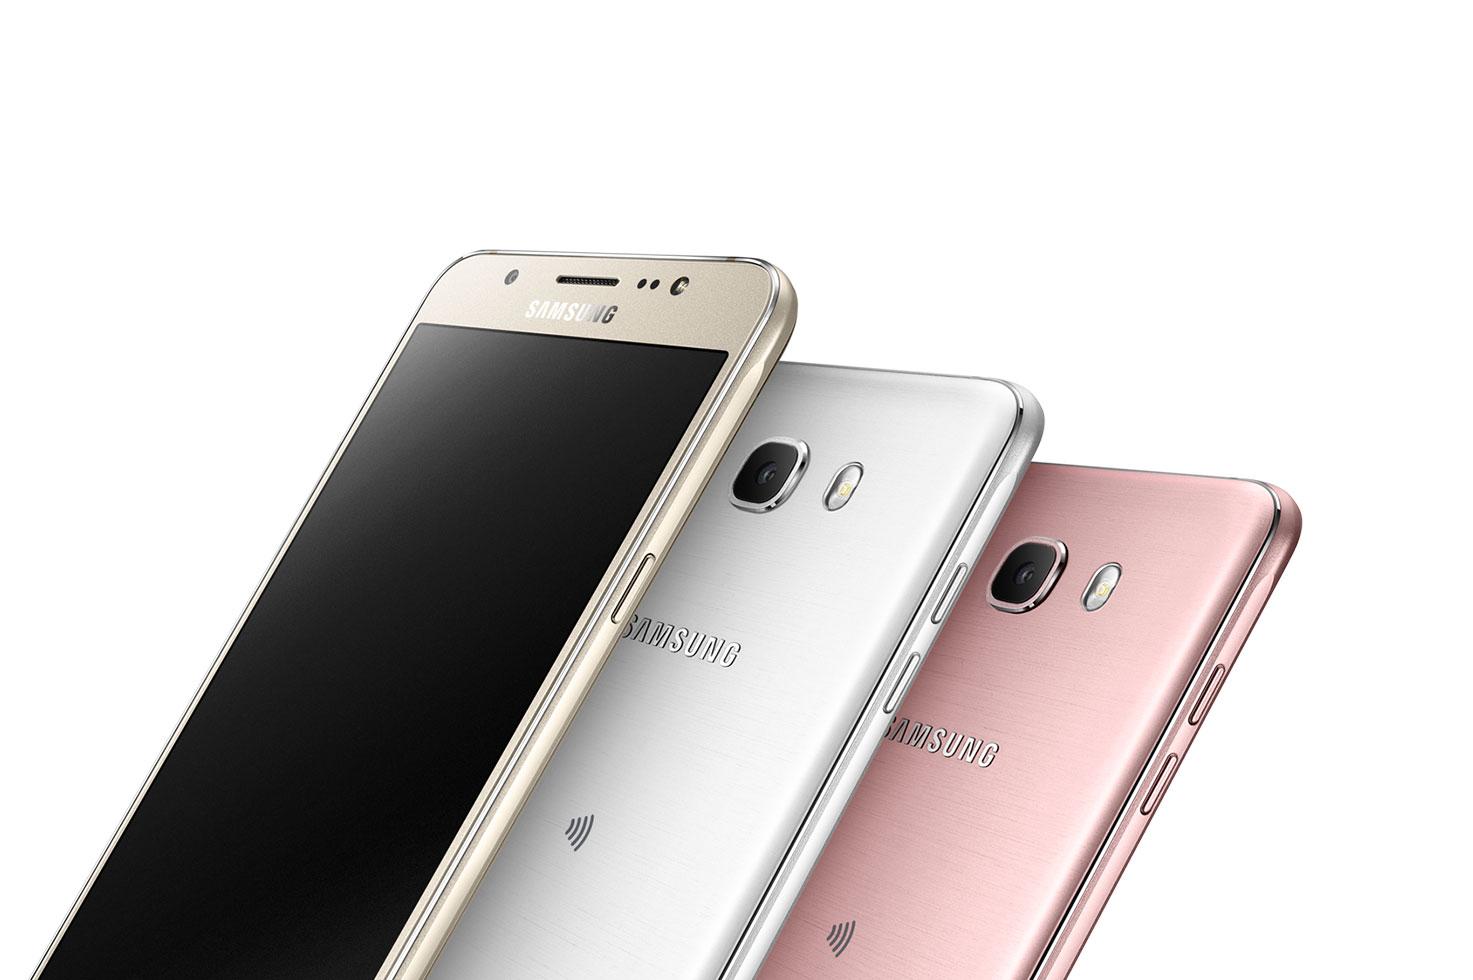 Samsung Galaxy J7 2016 dorado, blanco y rosa